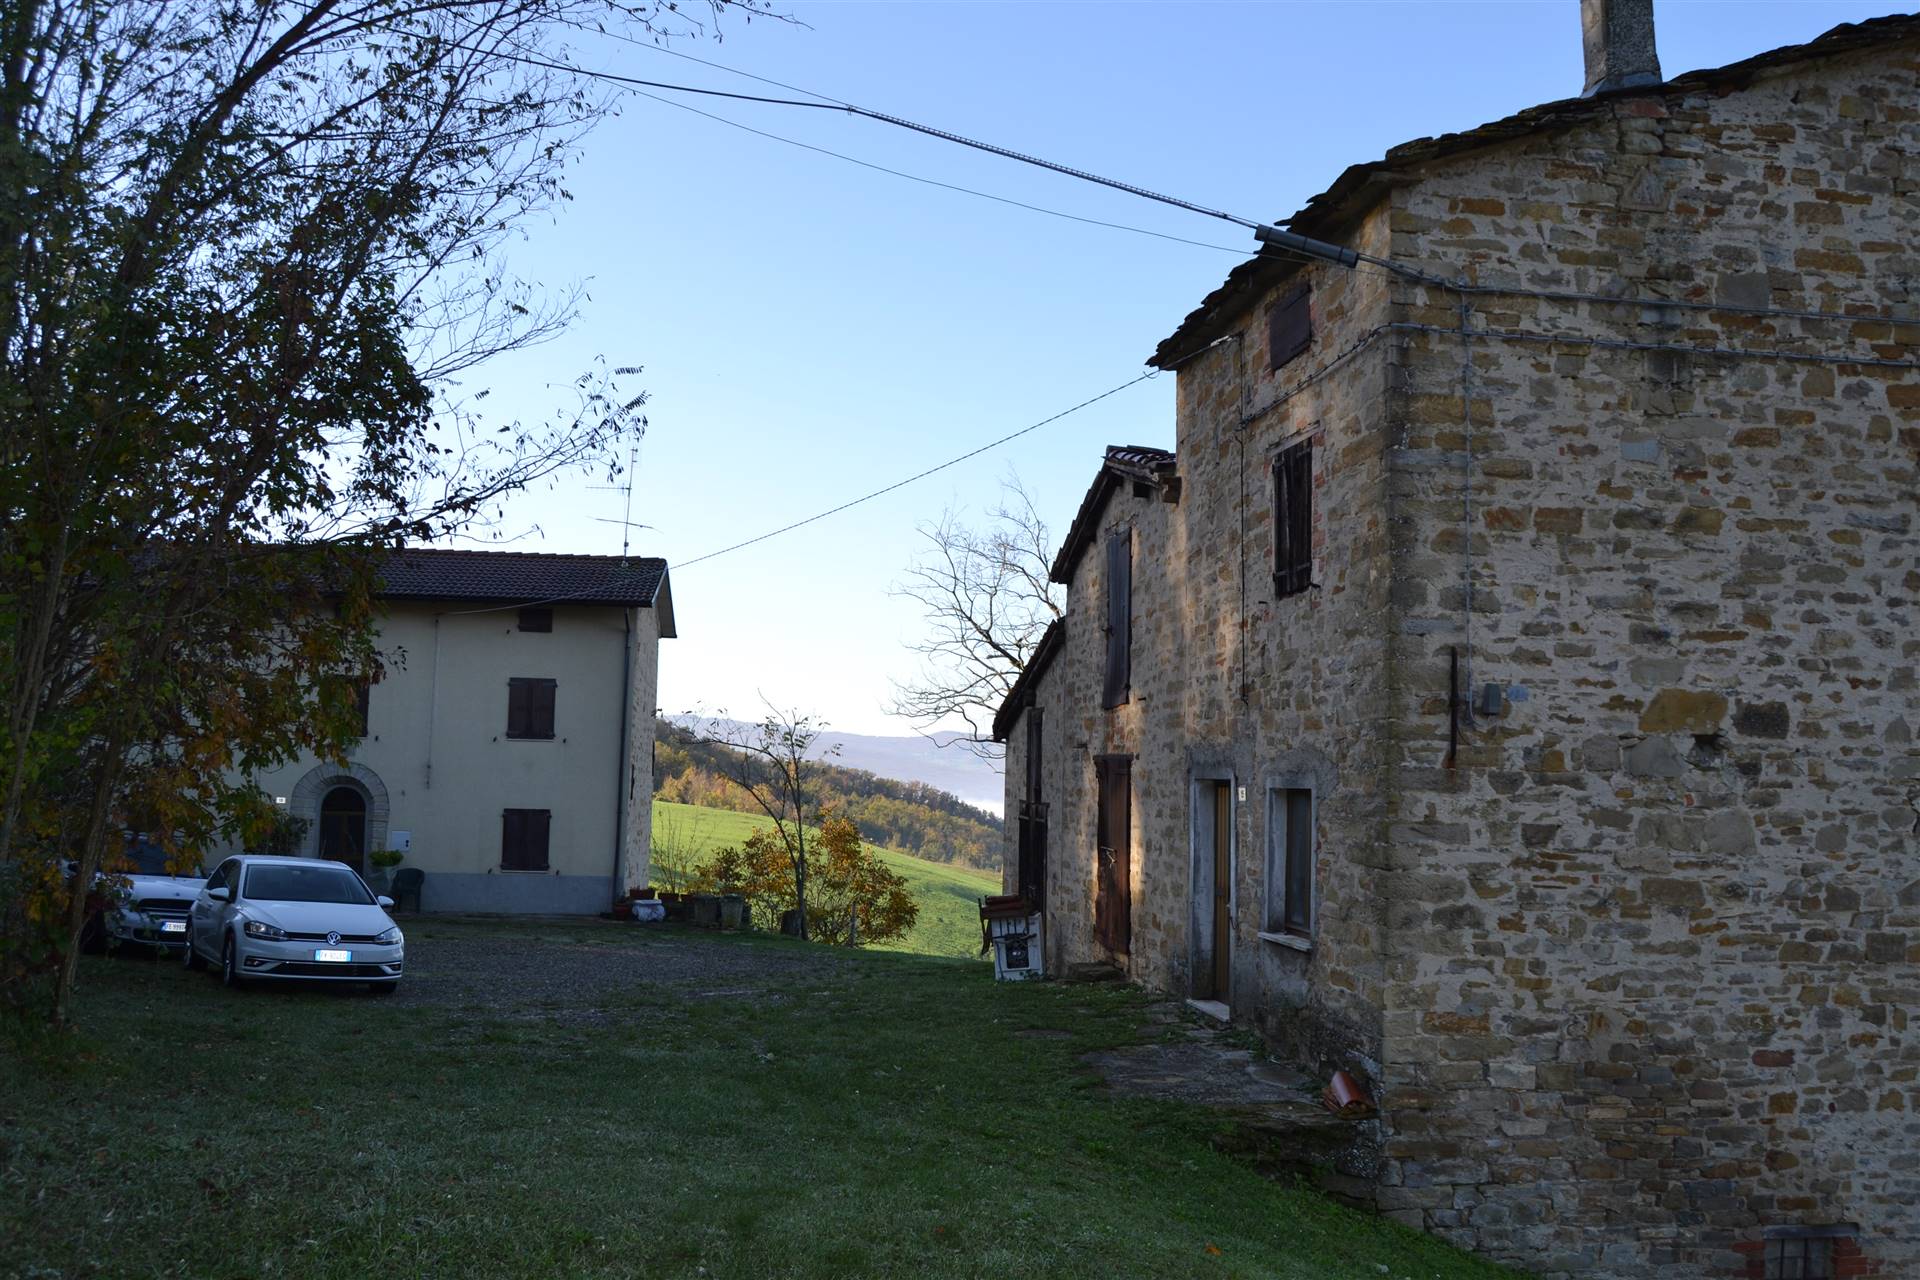 Tenuta-Complesso abitabile in zona Monteacuto Vallese a San Benedetto Val di Sambro